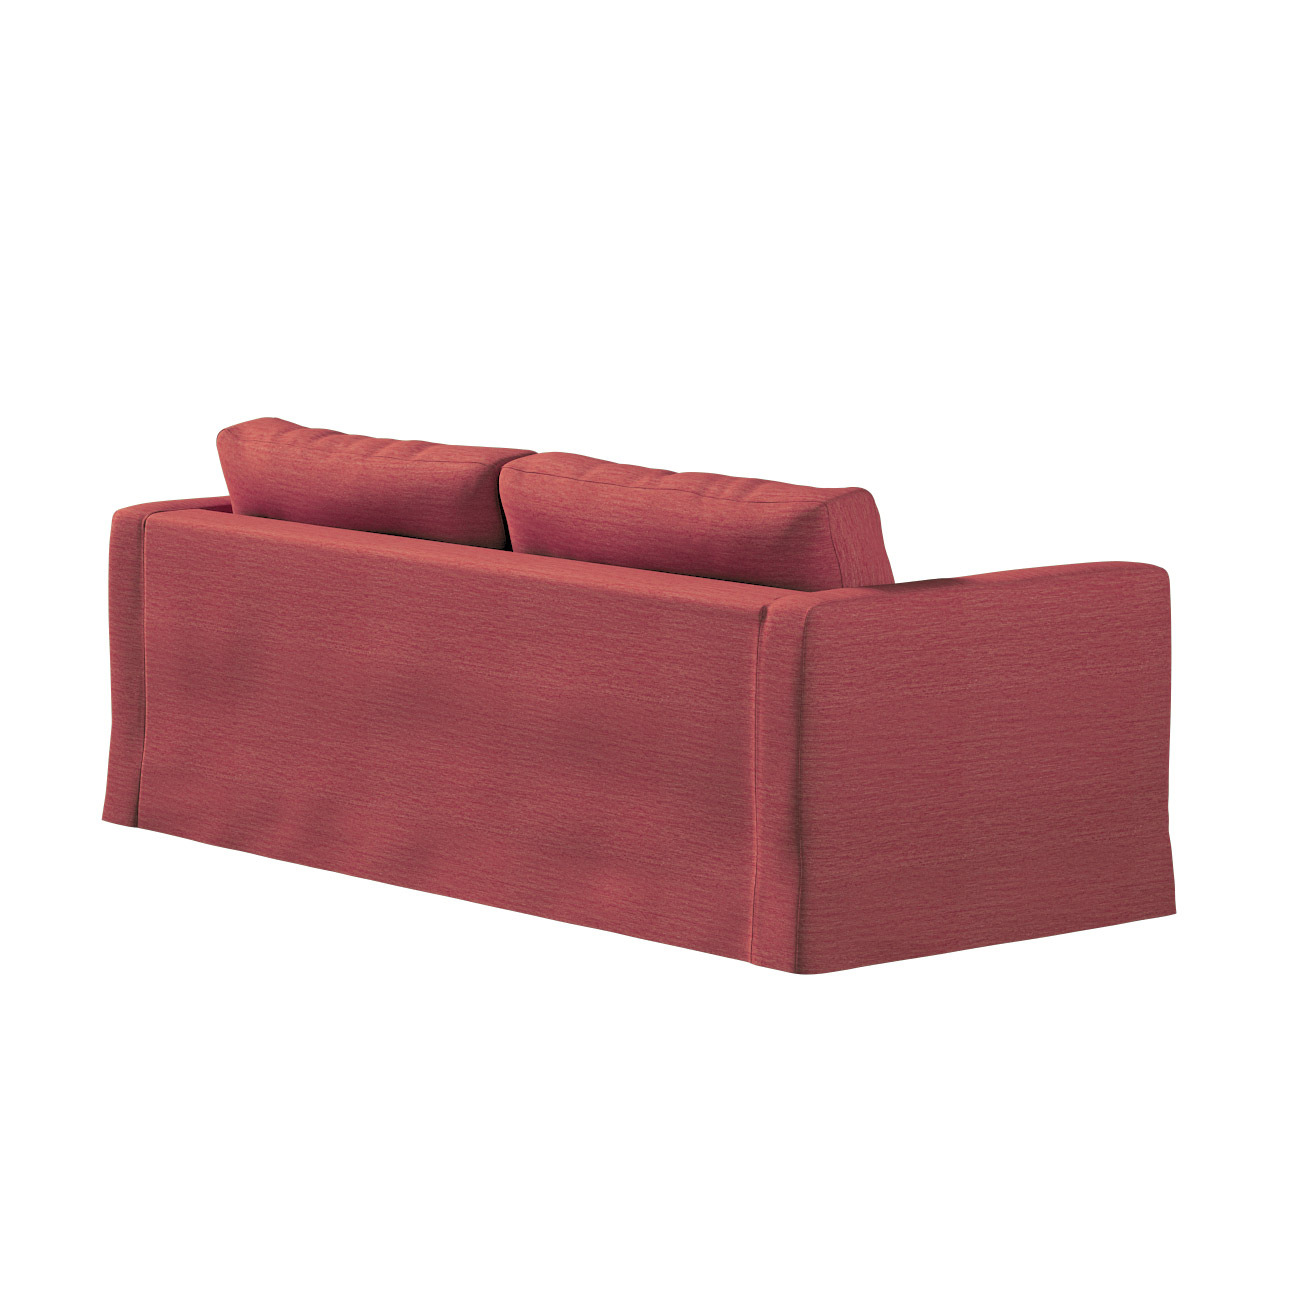 Bezug für Karlstad 3-Sitzer Sofa nicht ausklappbar, lang, ziegelrot, Bezug günstig online kaufen